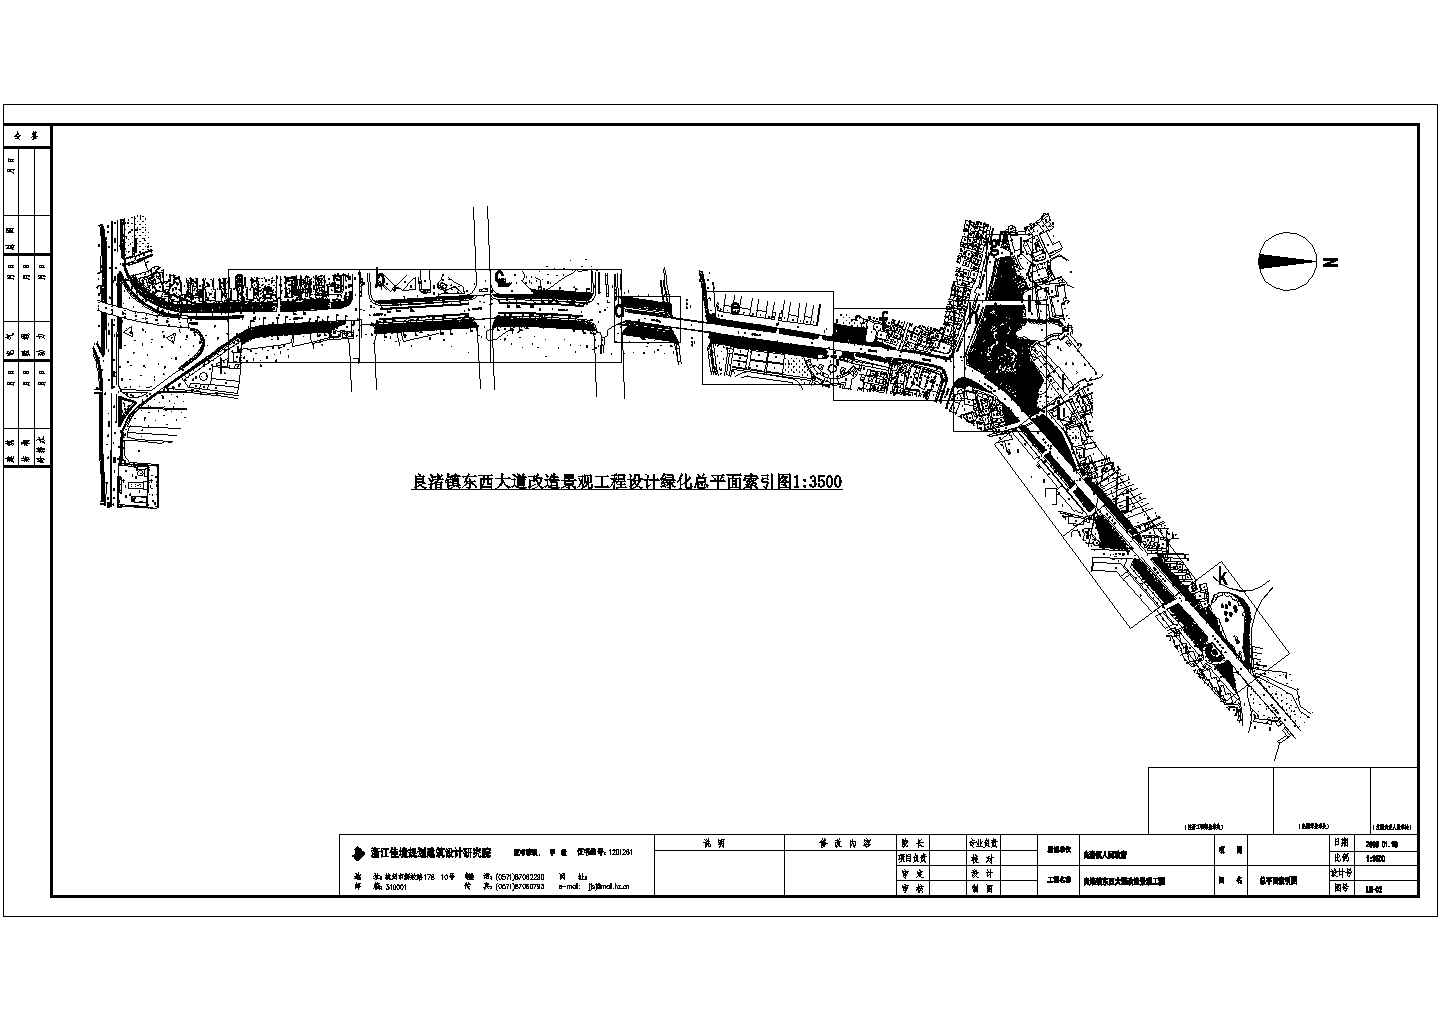 良渚镇东西大道改造景观工程植物配置图